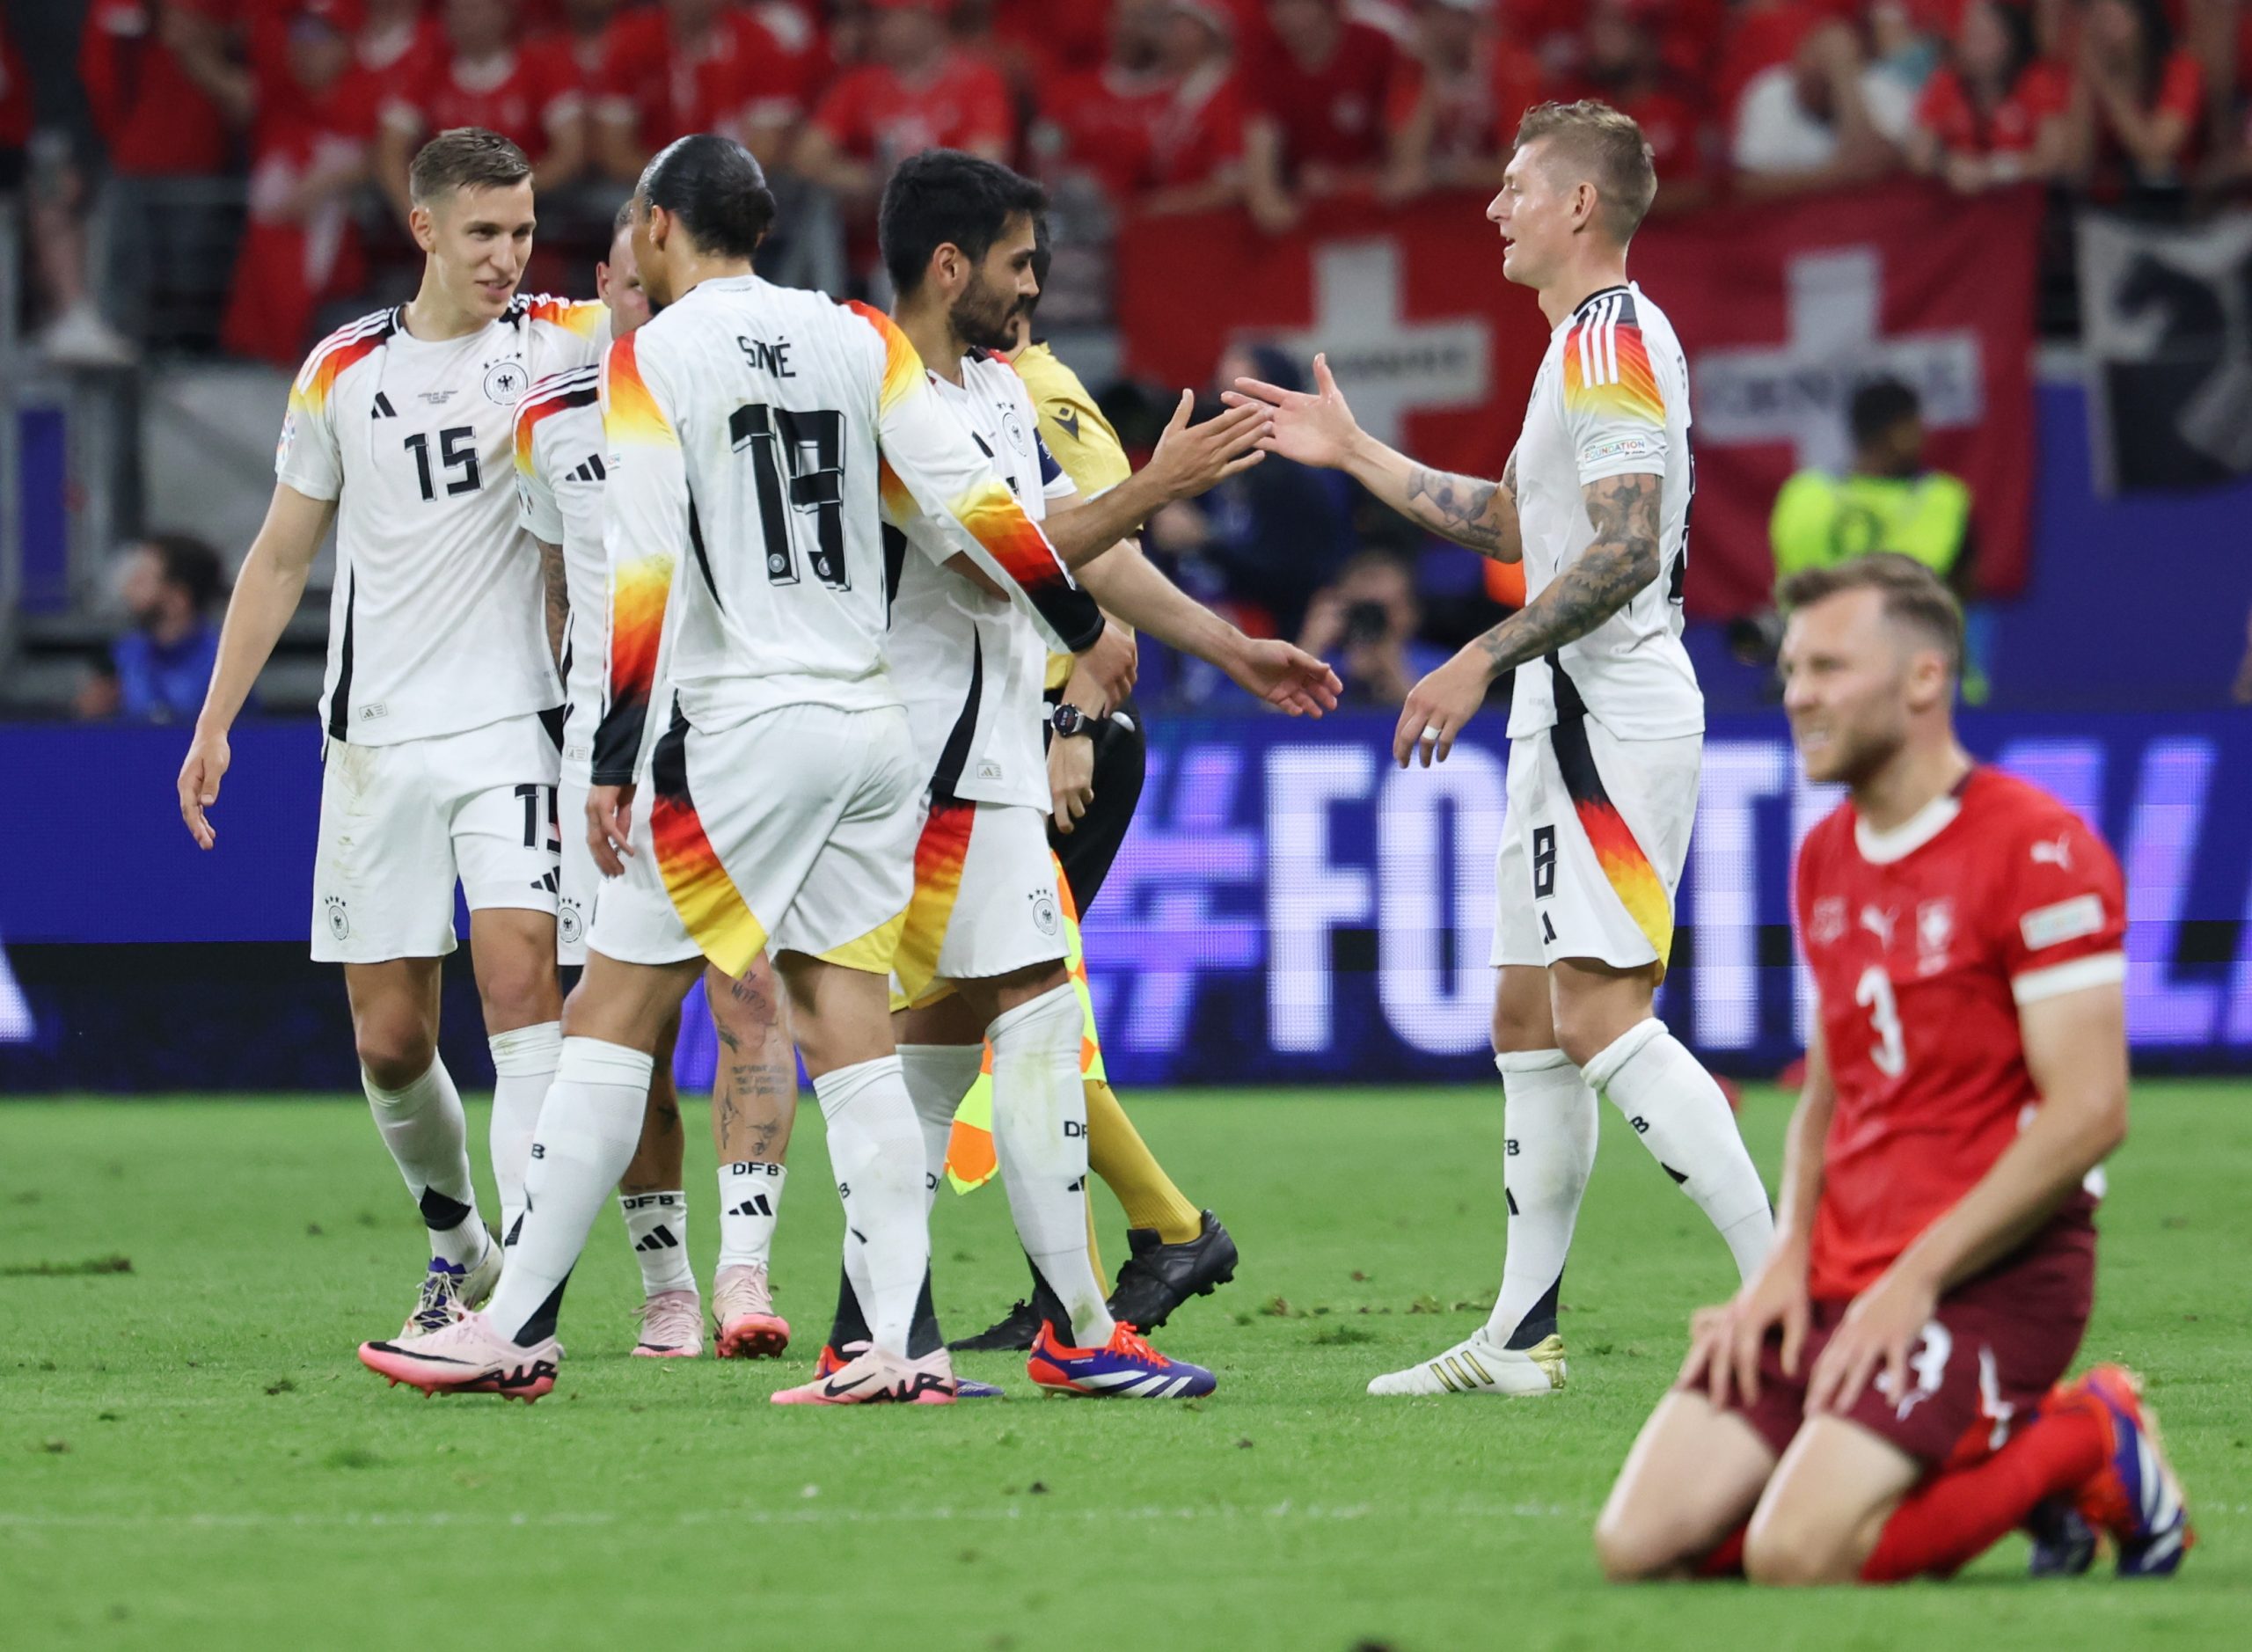 Alemania rescató el empate con Suiza-Agencia Carabobeña de Noticias – ACN – Deportes